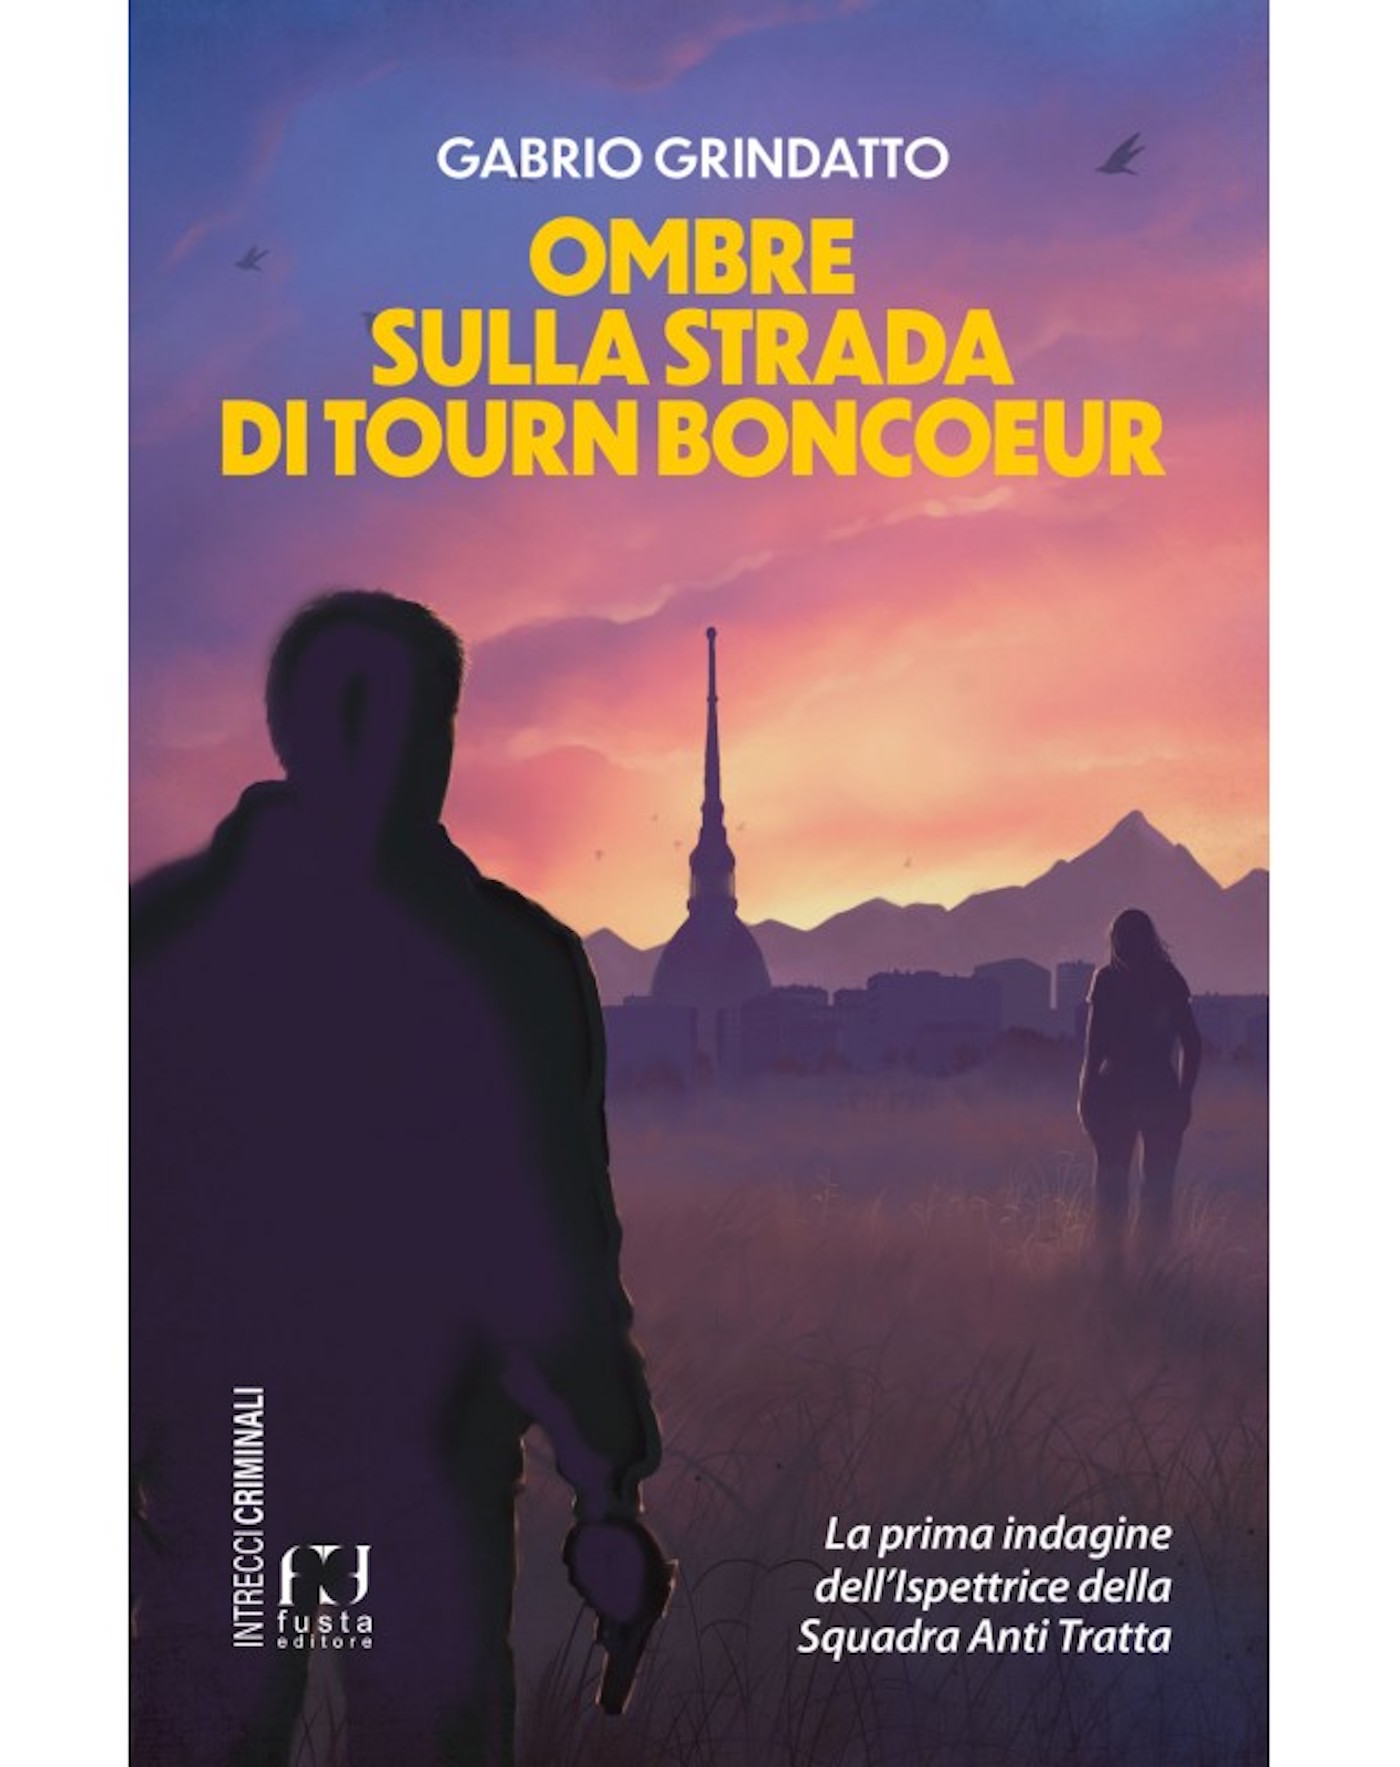 Ombre sulla strada di Tourn Boncoeur, romanzo di Gabrio Grindatto sulla mafia nigeriana